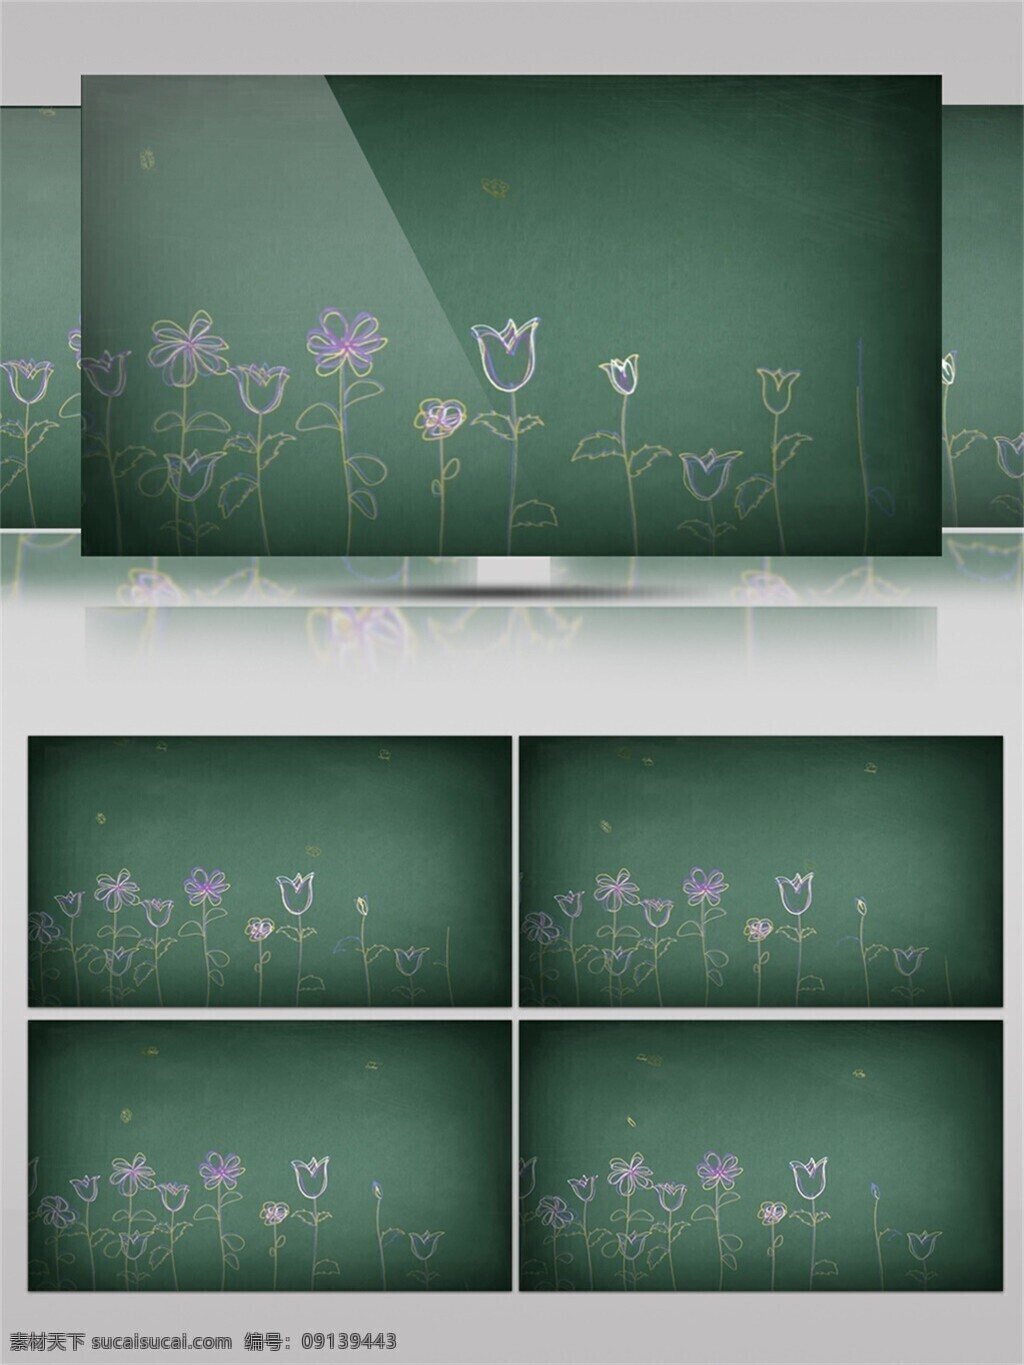 拍摄 黑板 上 花卉 视频 音效 粉笔 小花 紫色 白色 视频素材 视频音效